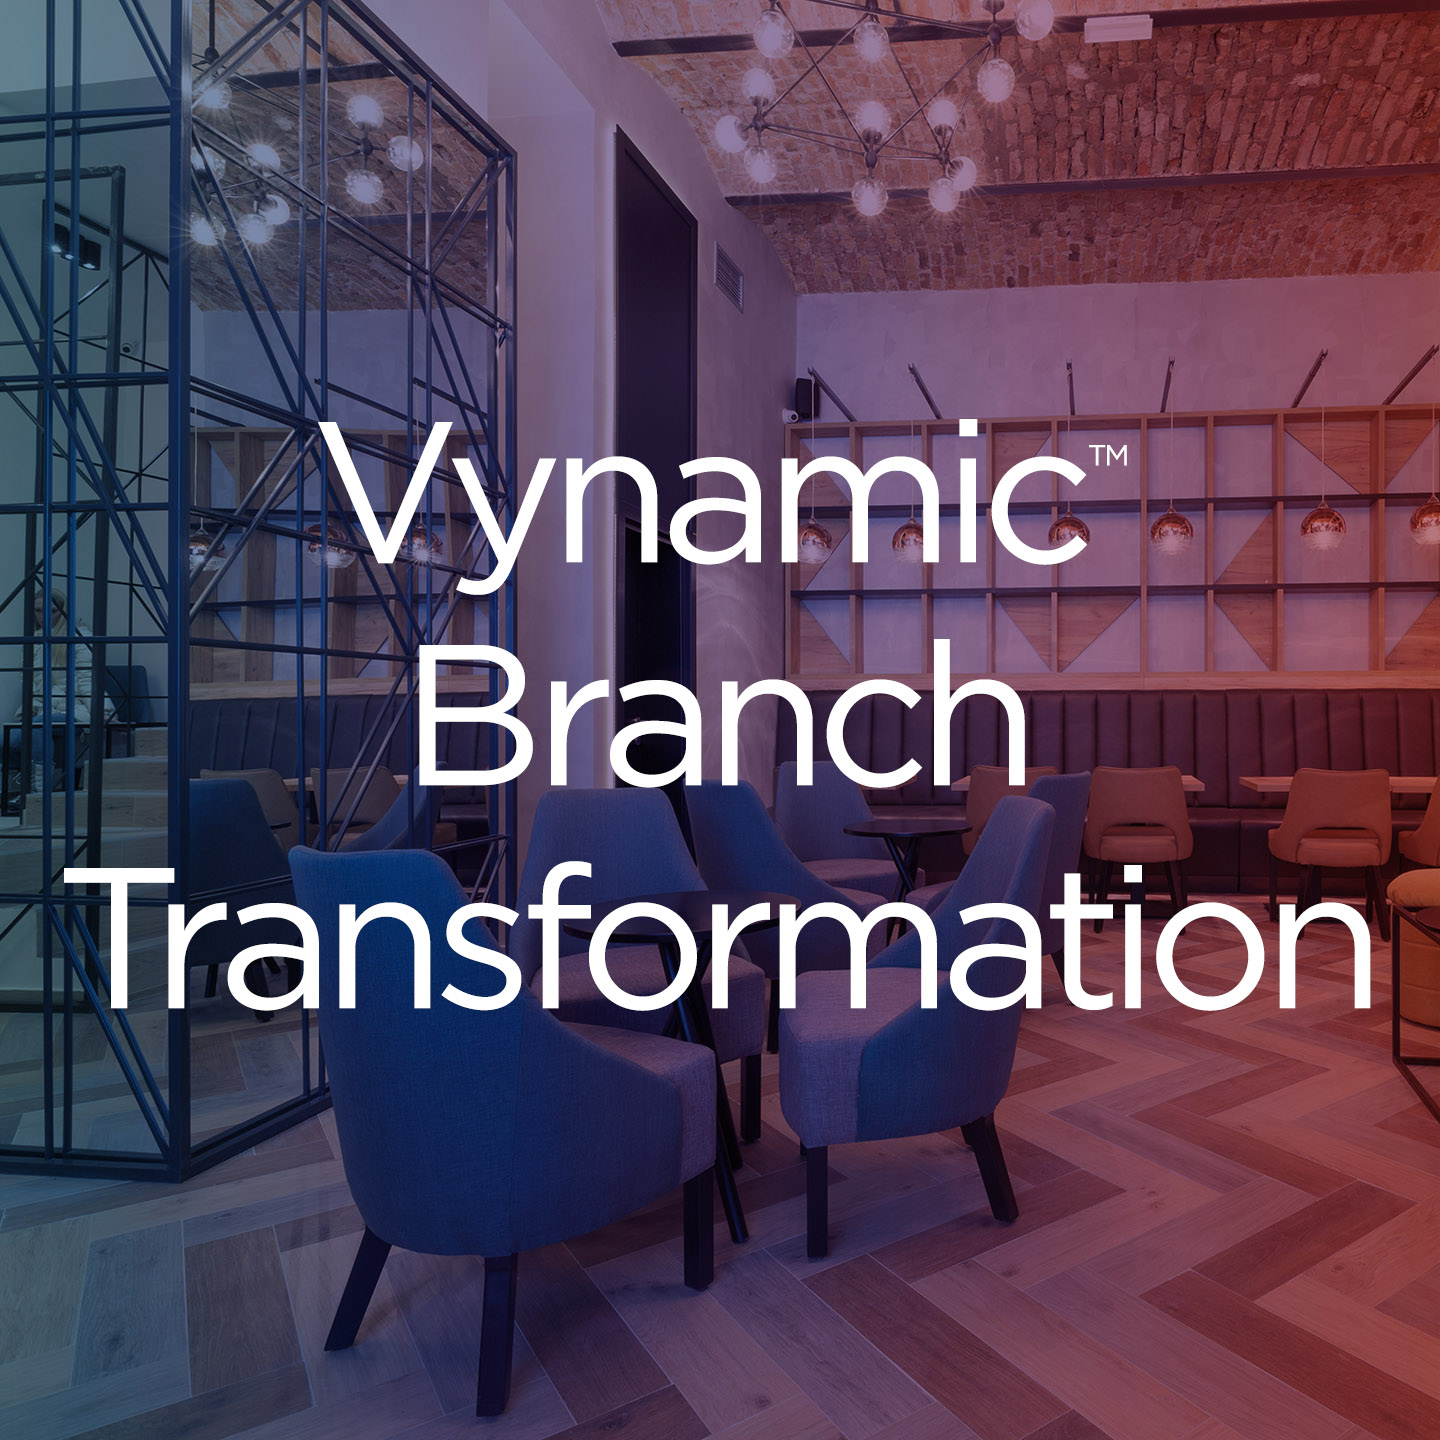 Vynamic Branch Transformation